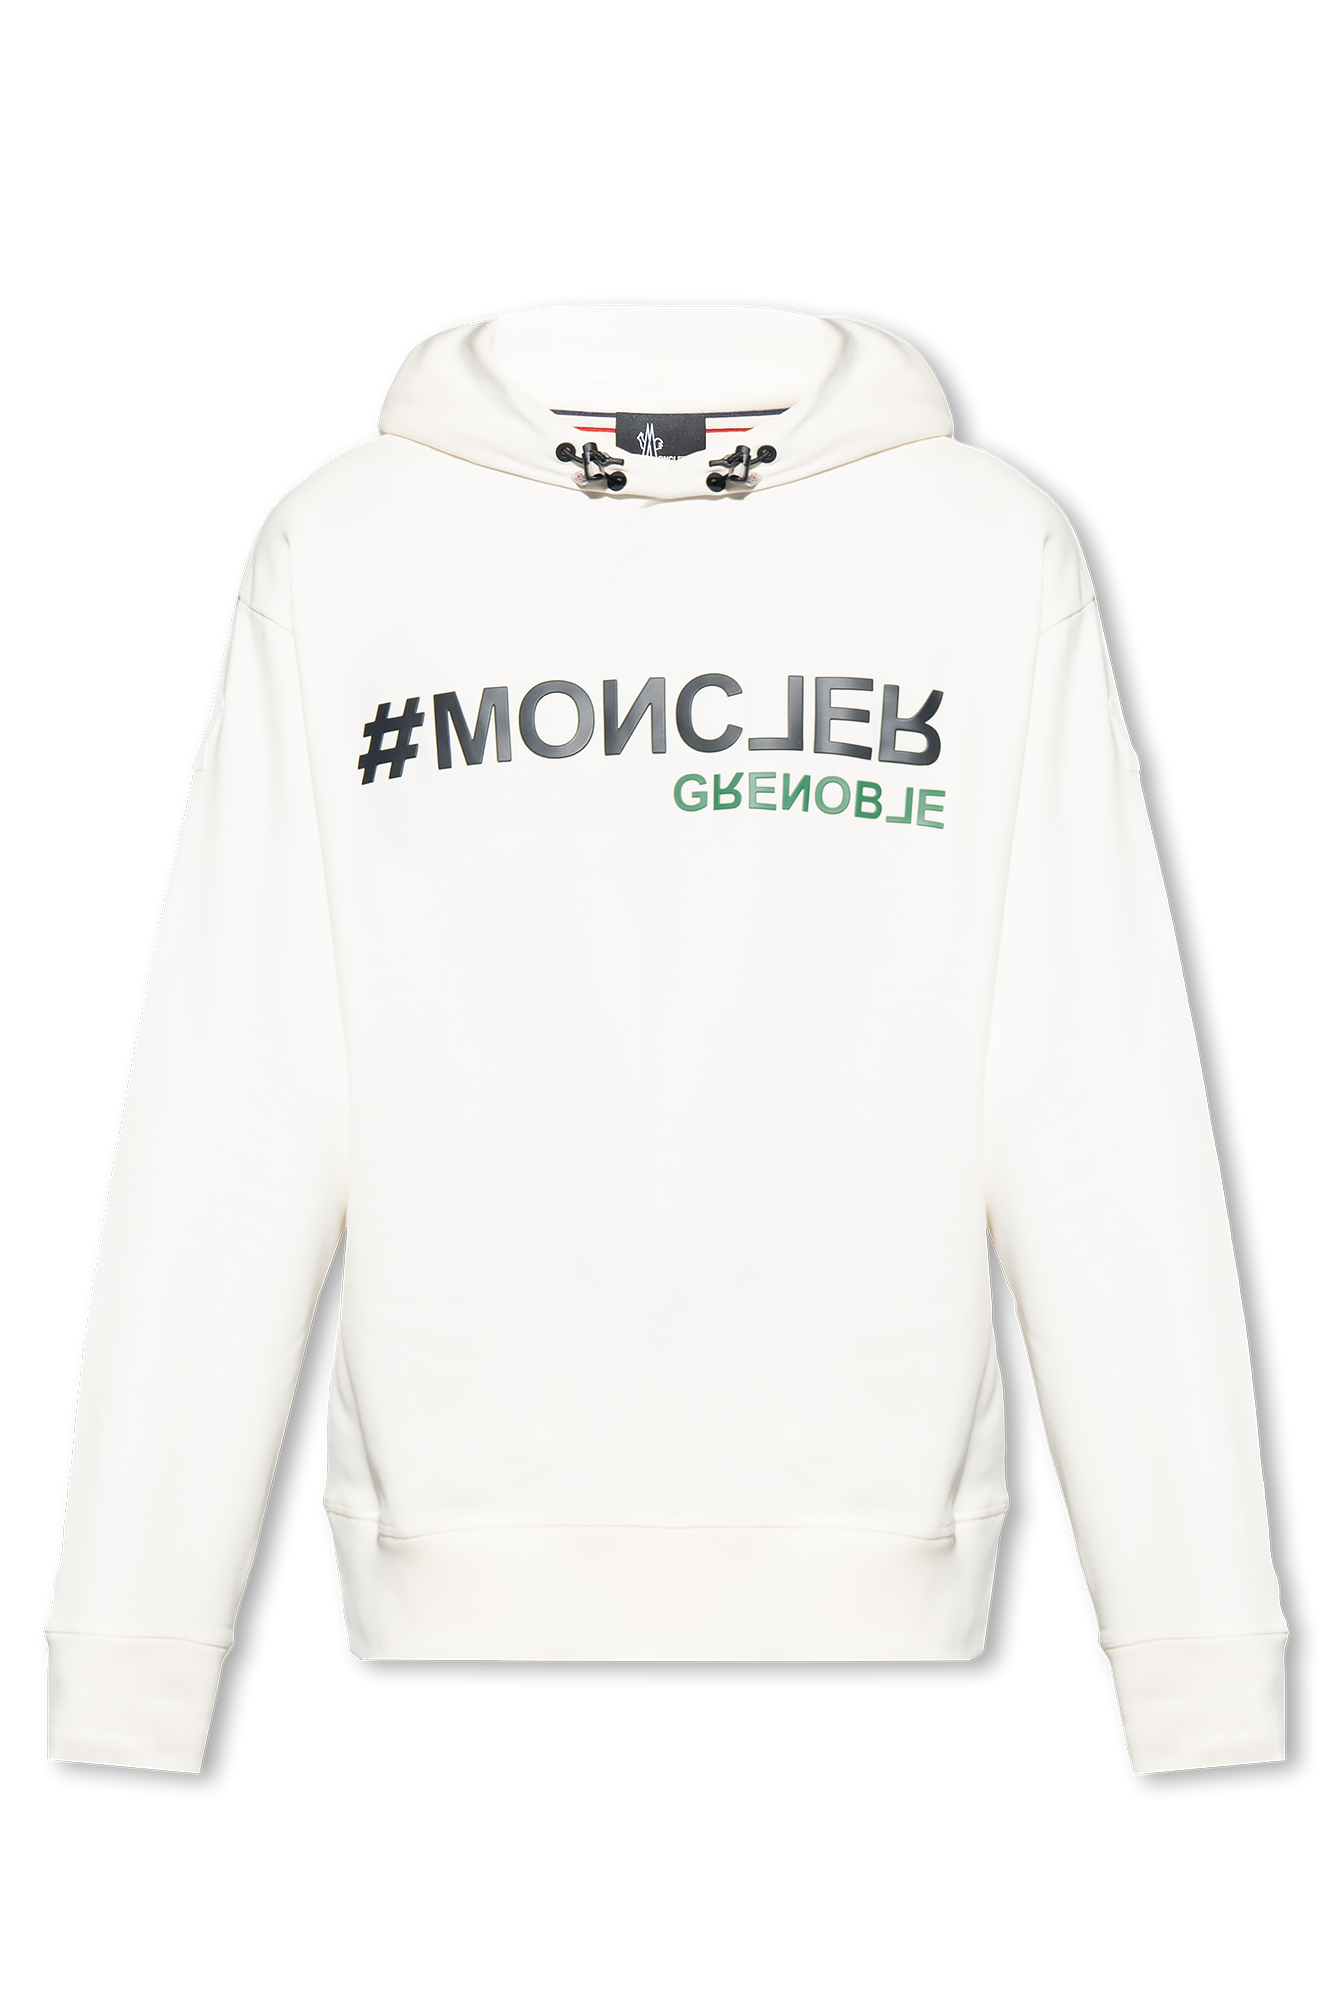 Moncler Grenoble Oasis T-shirt bianca con orli delle maniche arricciati